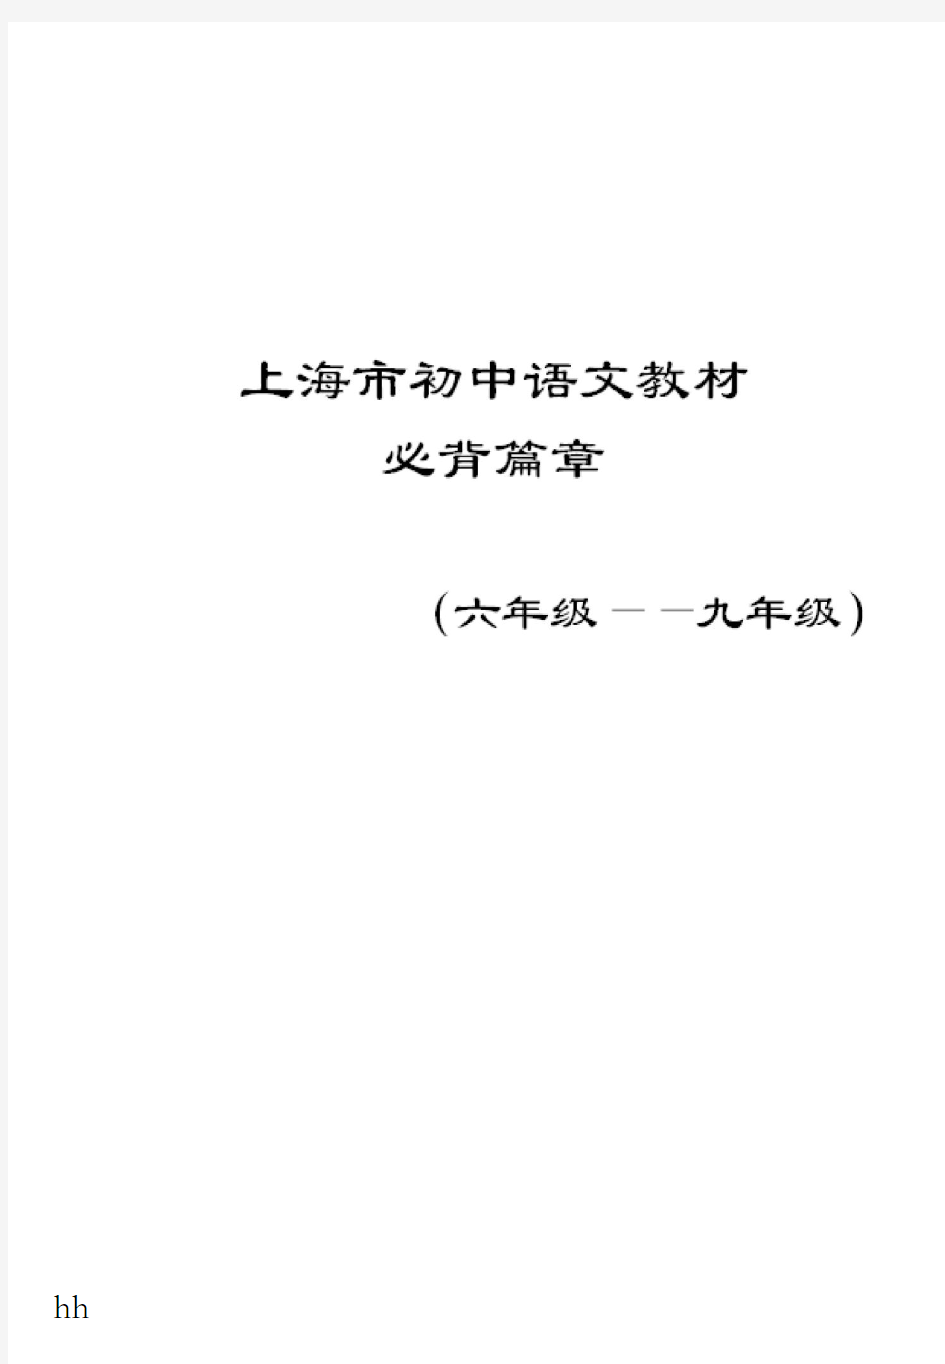 上海市初中语文教材必背篇章(六年级——九年级)